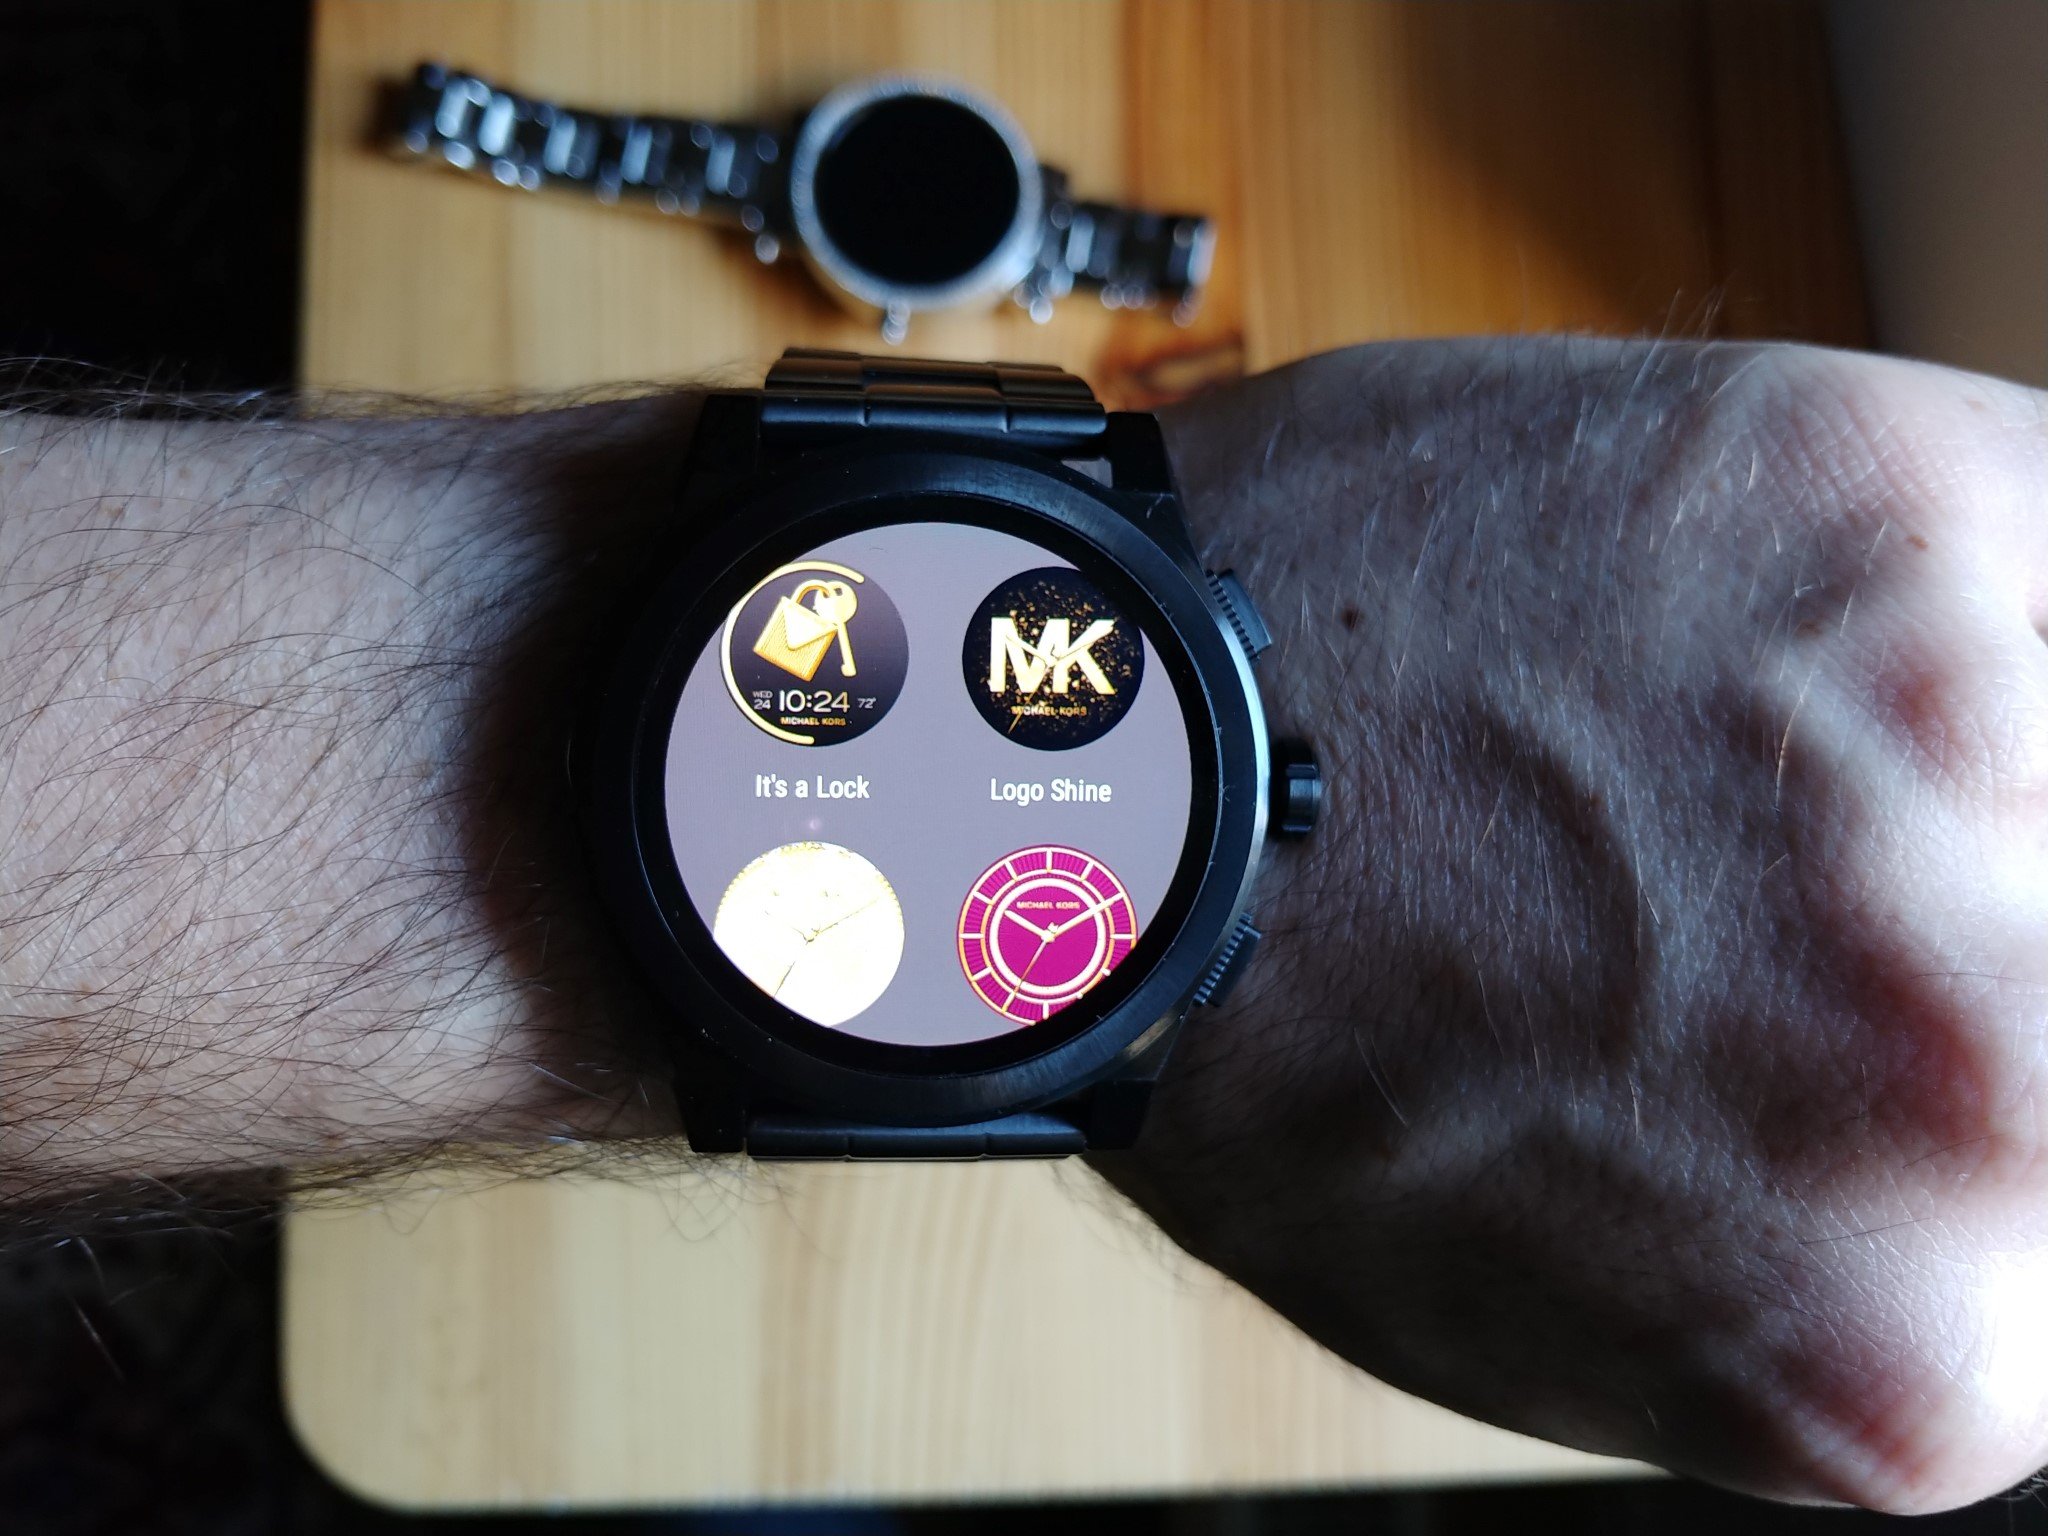 michael kors grayson smartwatch straps